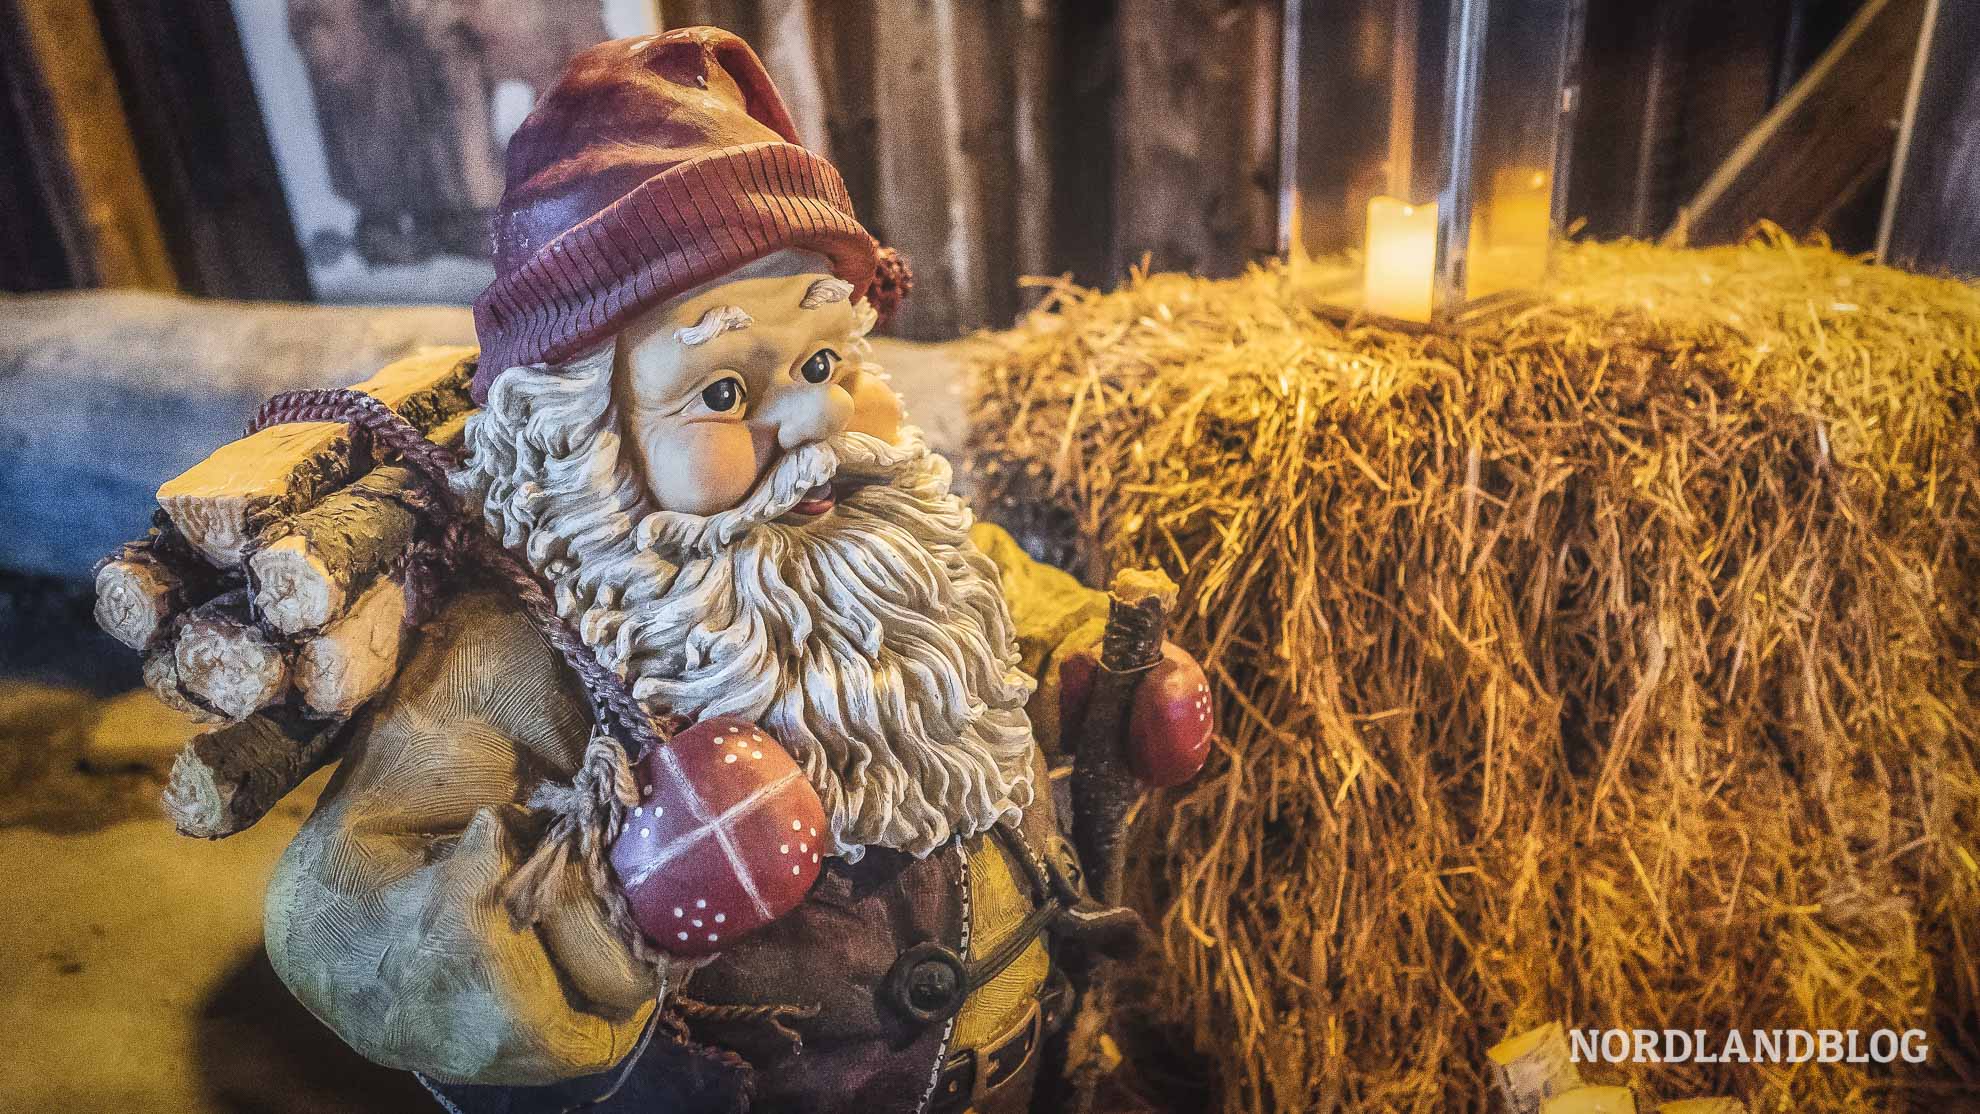 Julenisser, der norwegische Weihnachtsmann zu Weihnachten in Norwegen